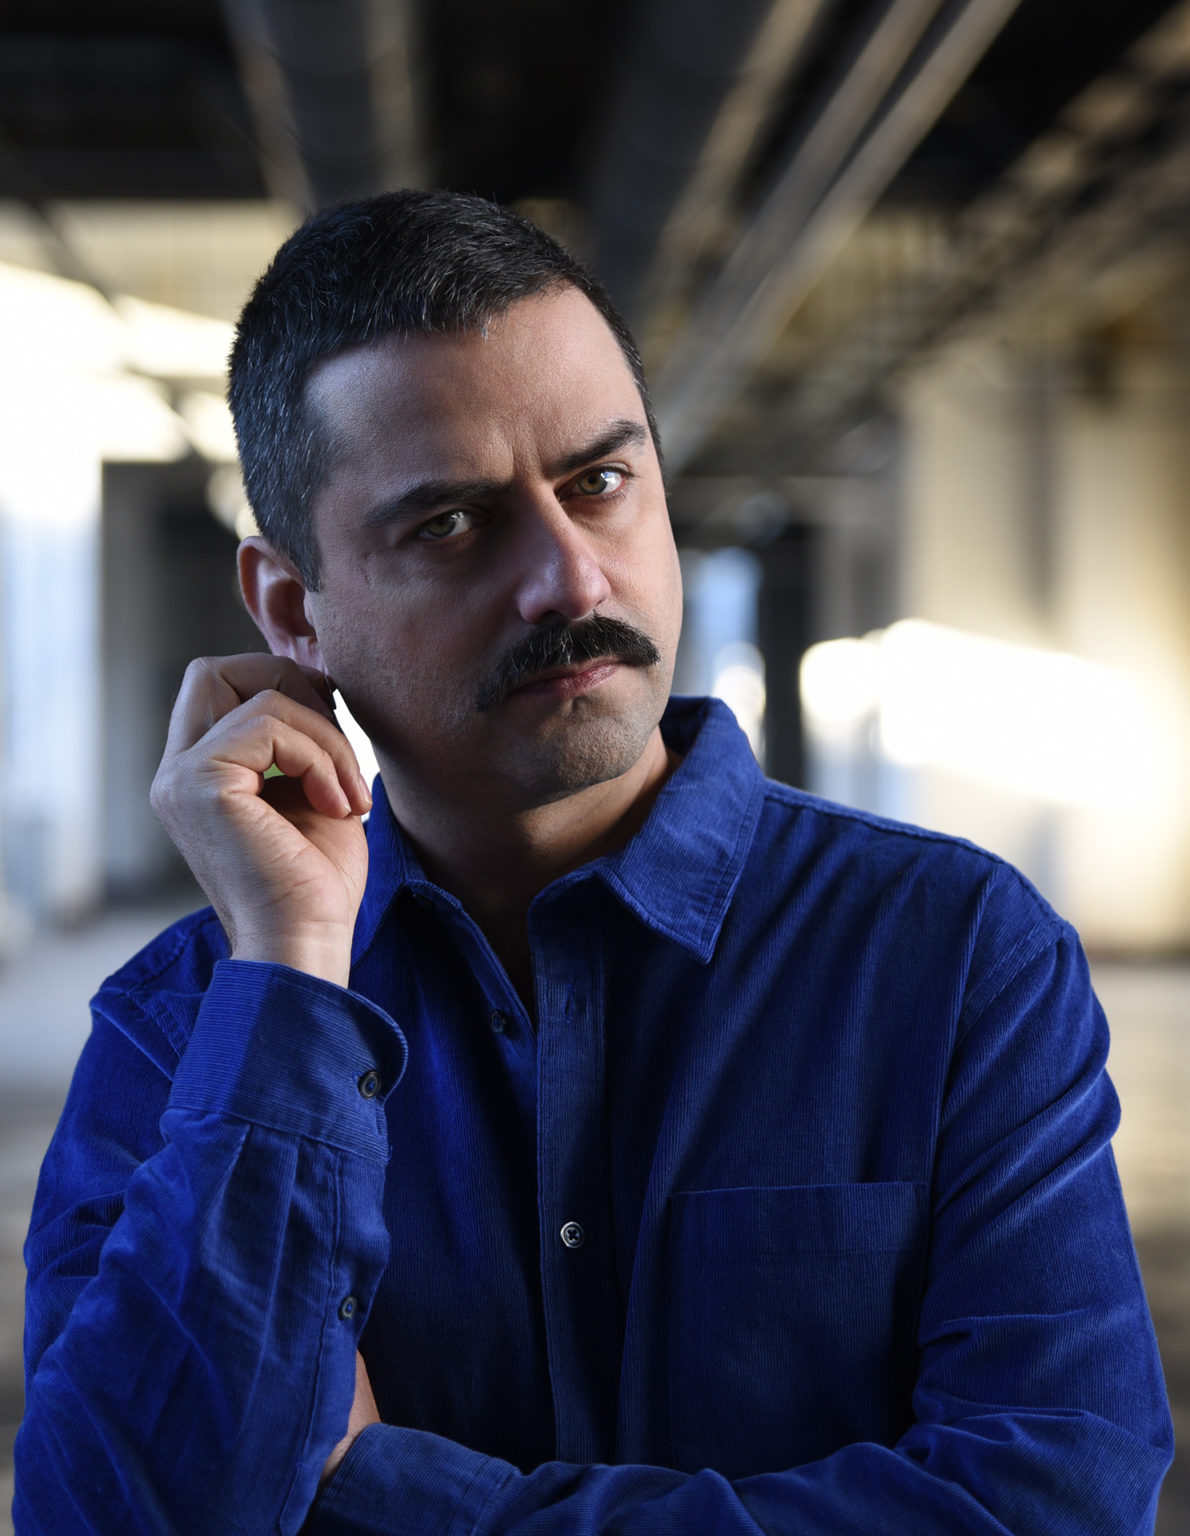 Portrait de l'artiste Gurshad Shaheman qui se touche l'oreille. Il porte une chemise bleue.